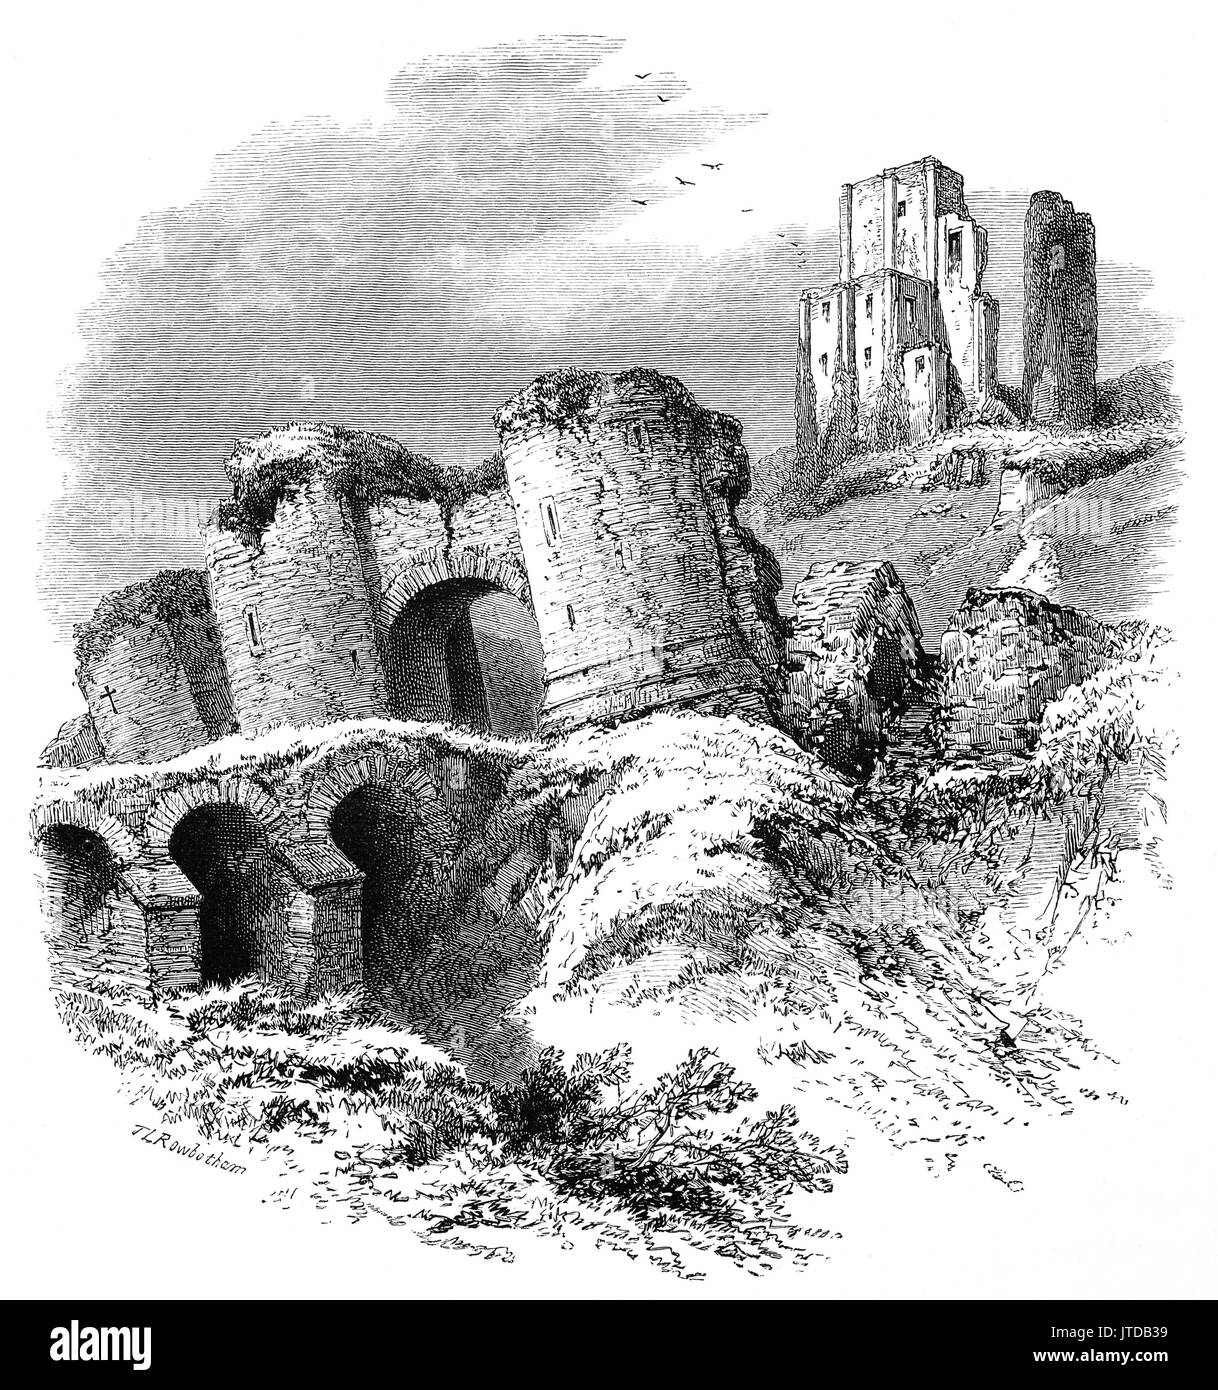 1870: il decimo secolo le rovine di Corfe Castle che si erge al di sopra del villaggio dello stesso nome. Era il luogo dell'assassinio di Edoardo il martire nel 978. Durante la guerra civile inglese fu una roccaforte monarchica e venne assediata due volte, nel 1643 e nuovamente nel 1646. Dorsetshire, Inghilterra Foto Stock